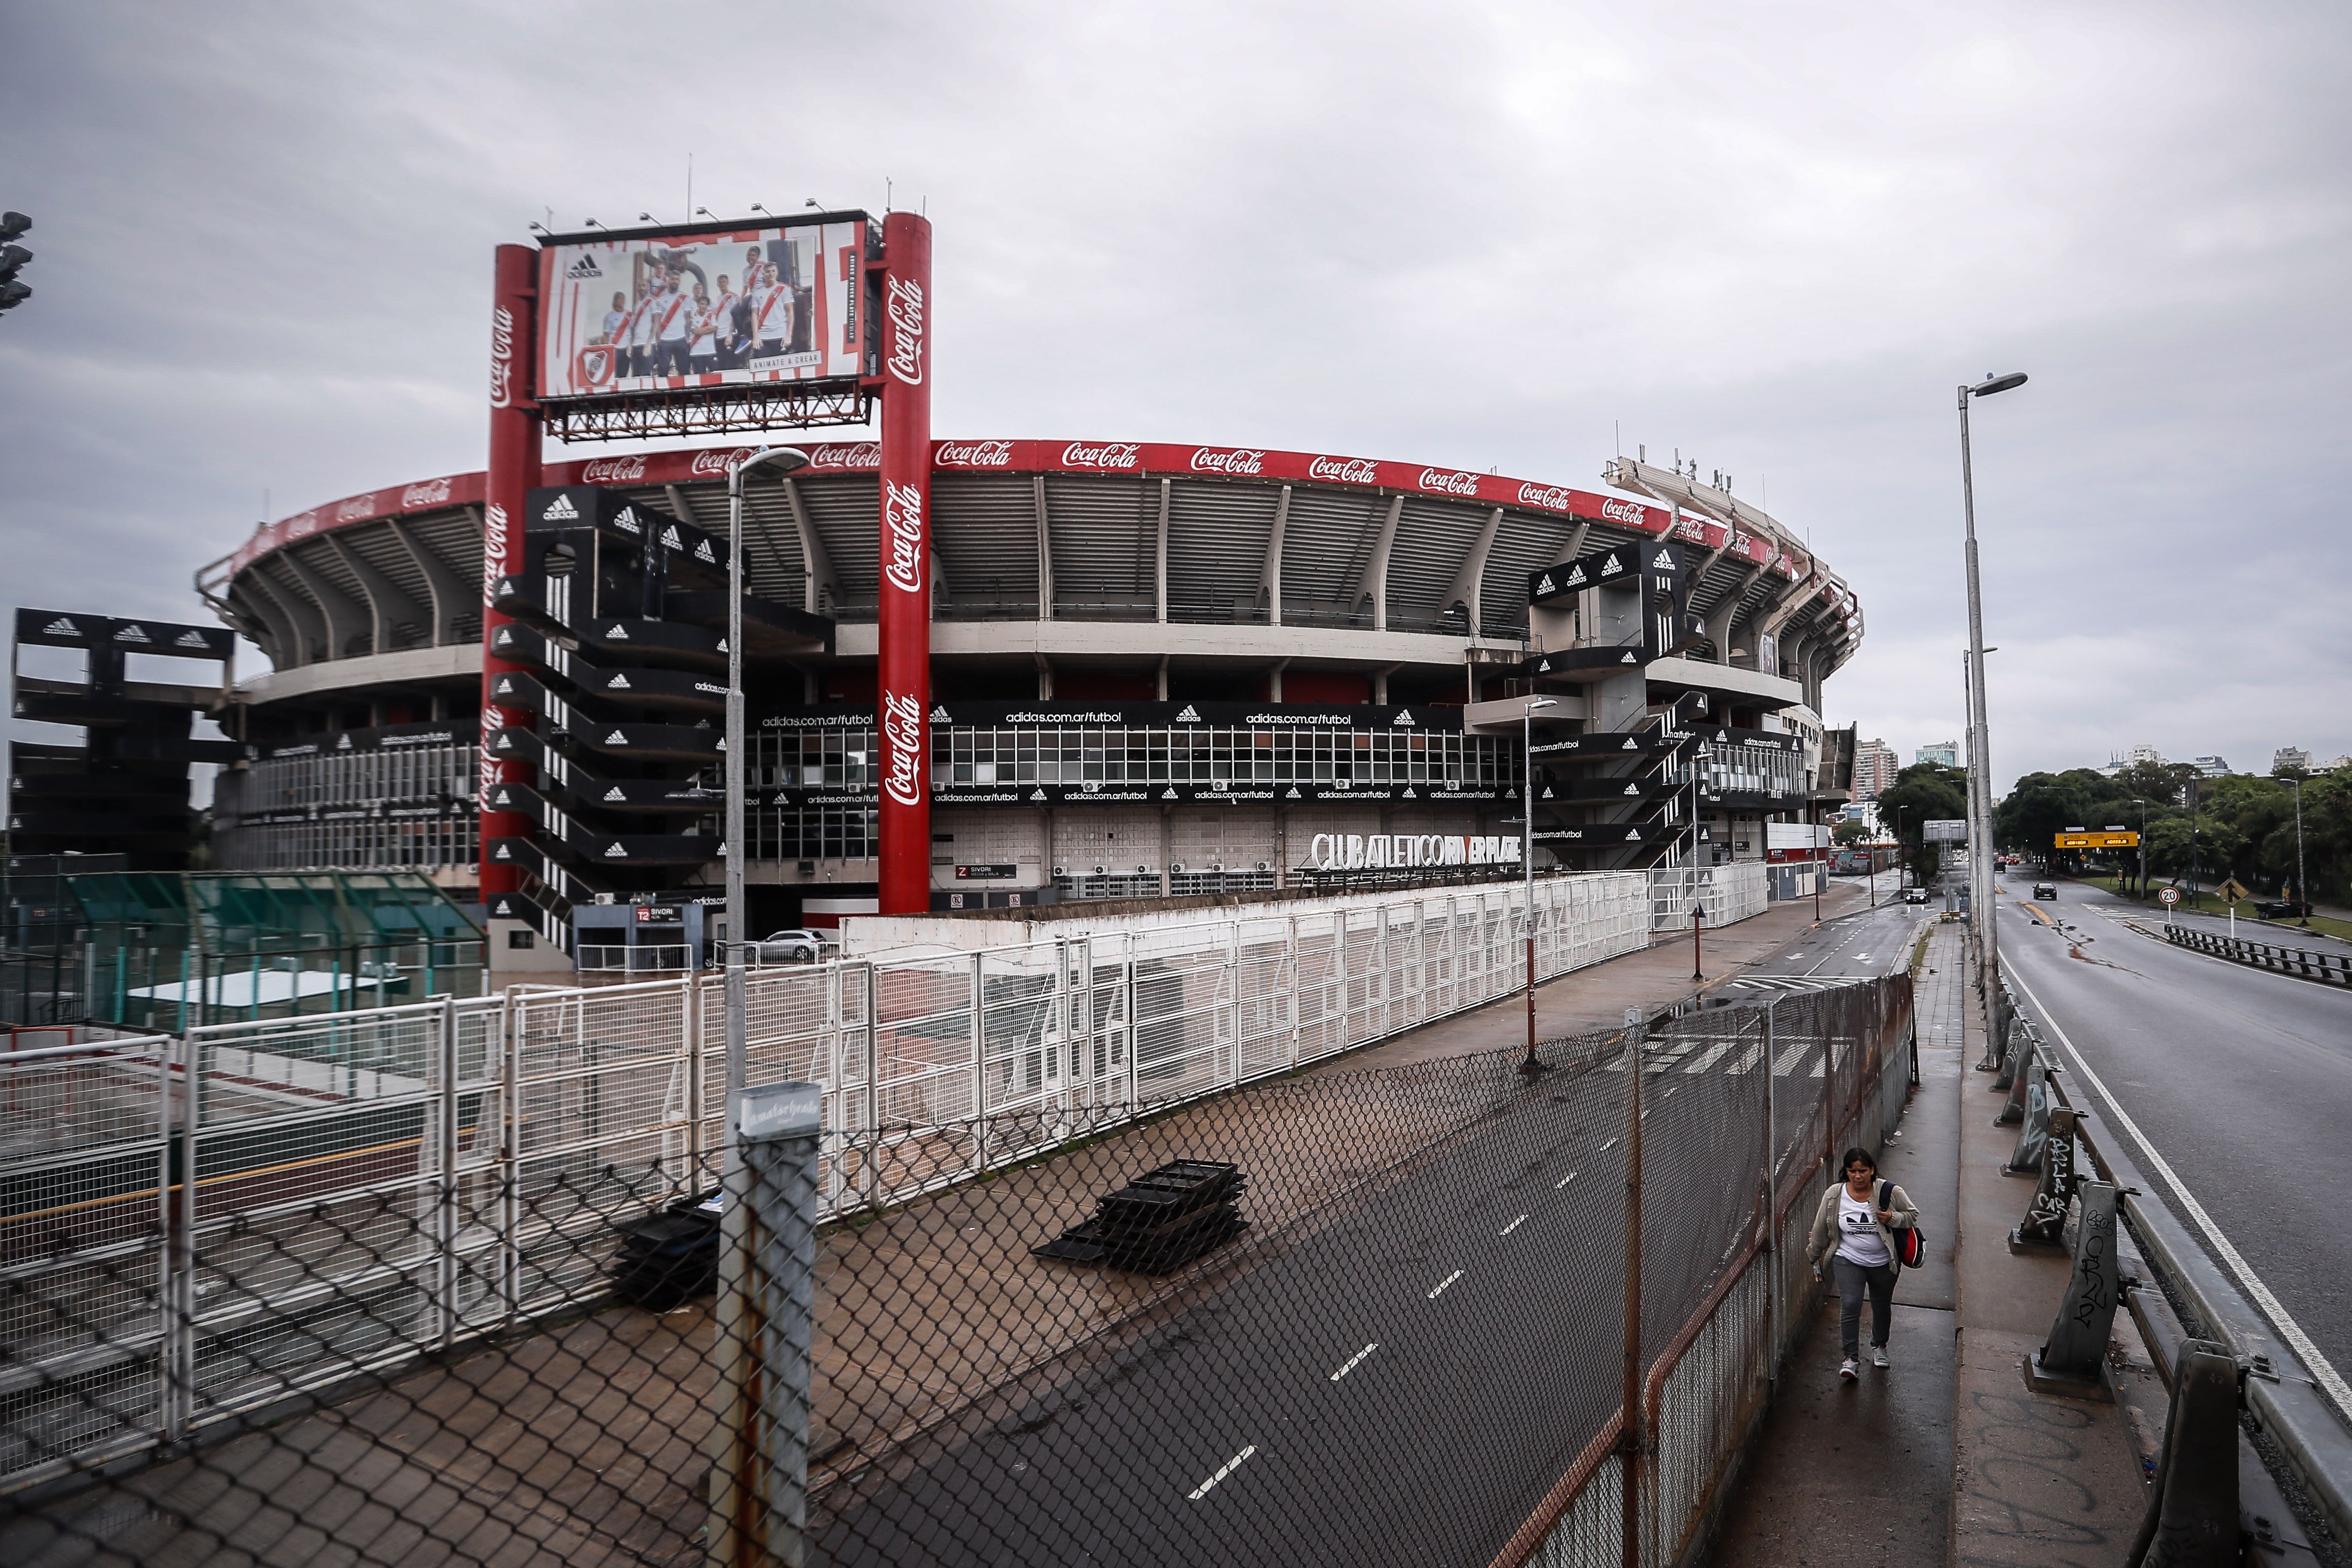 Vista del estadio Monumental de River Plate, plantel que fue el primero en pedir protección. (Foto Prensa Libre: EFE(